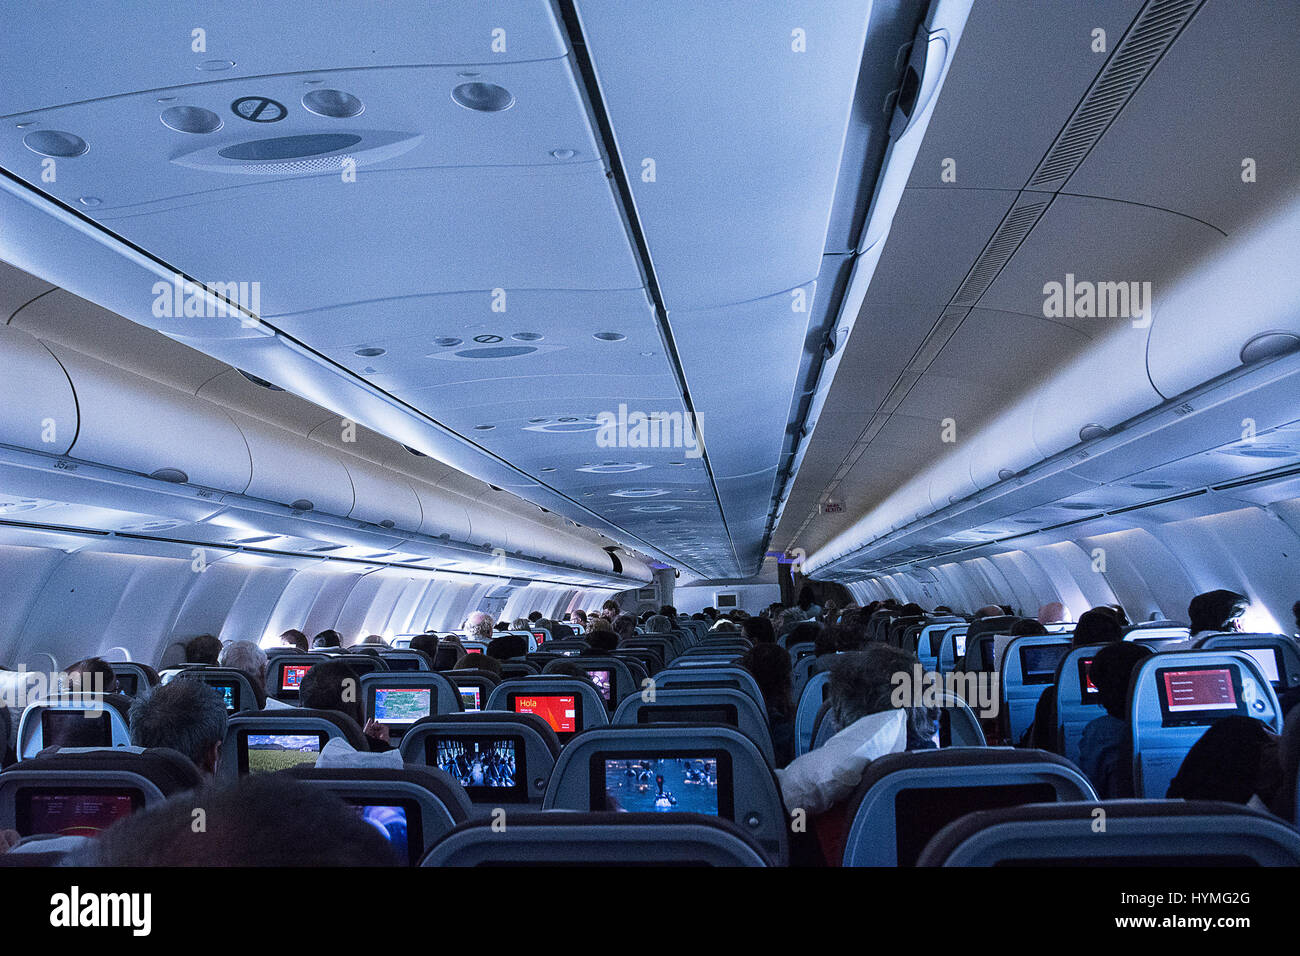 Iberia airplane immagini e fotografie stock ad alta risoluzione - Alamy